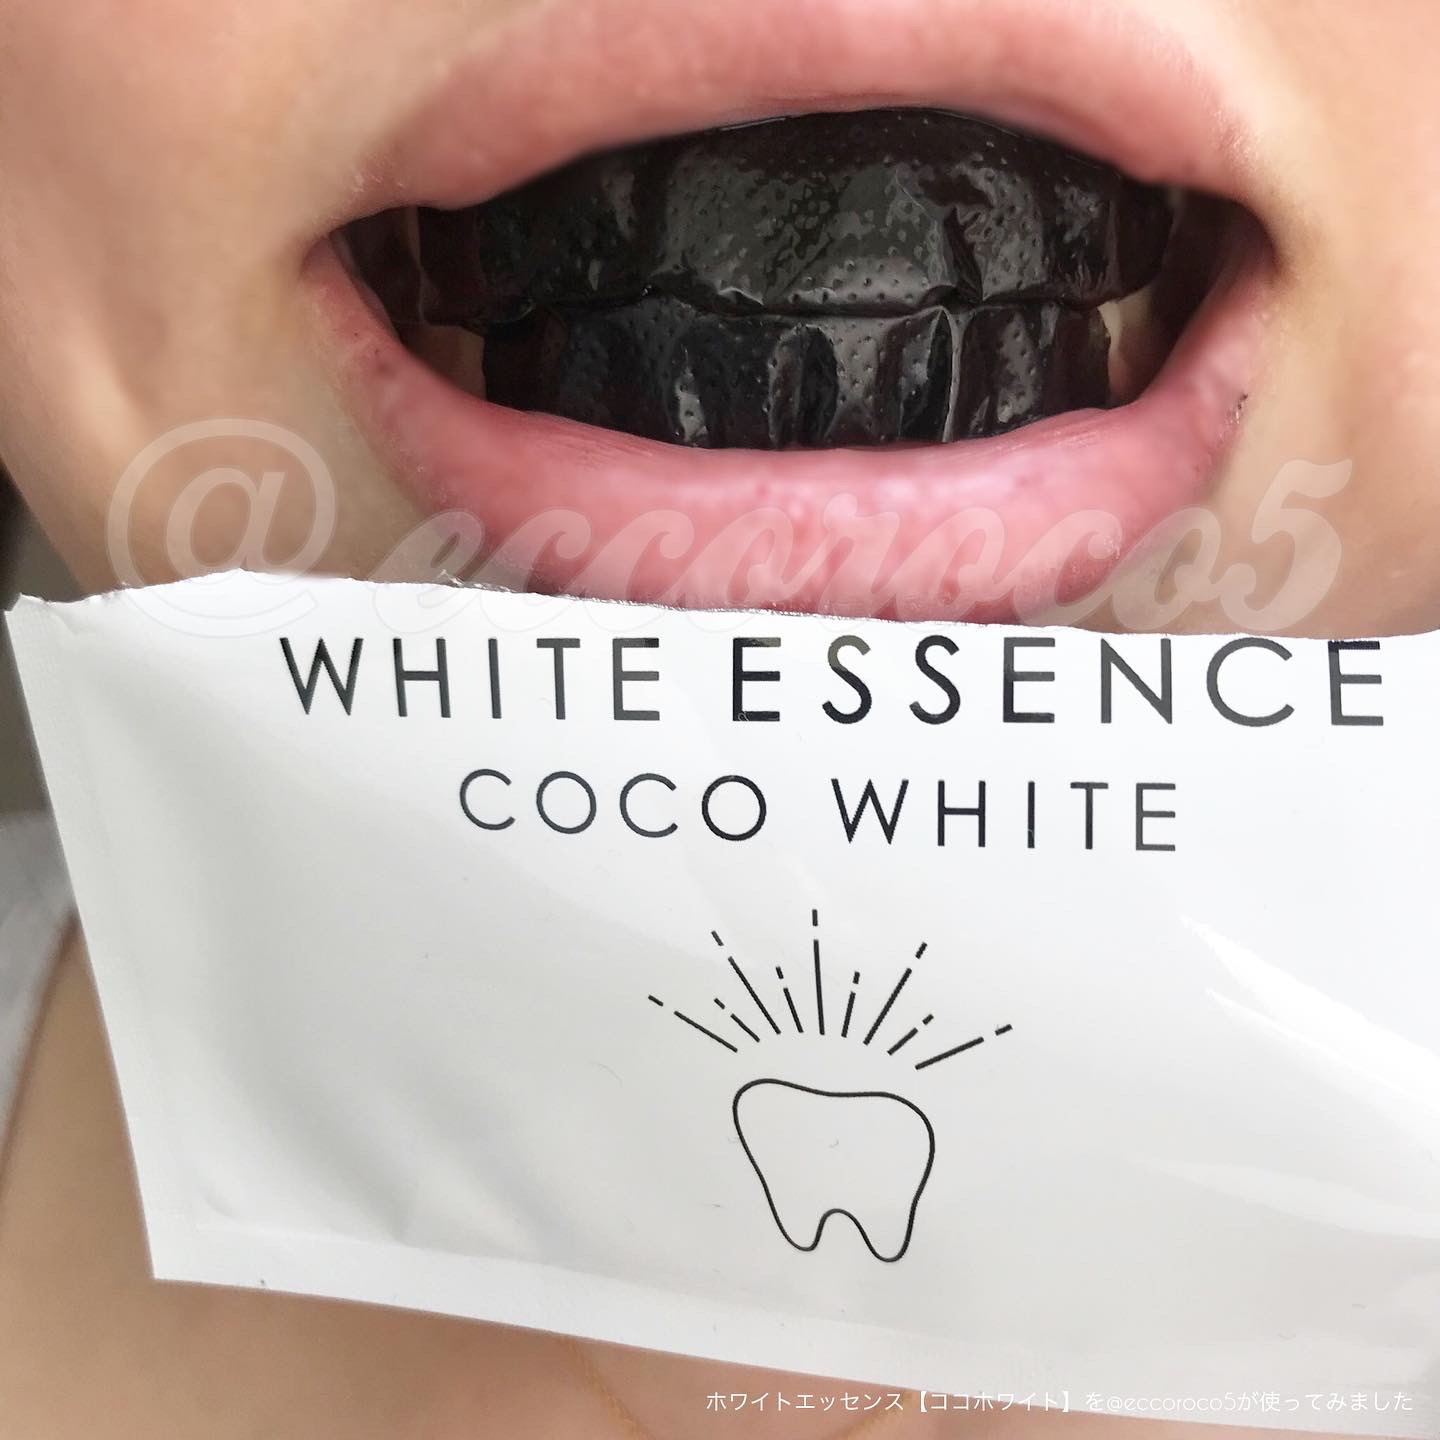 WHITE ESSENCE(ホワイトエッセンス) ホワイトニングシート ココホワイトの良い点・メリットに関する@eccoroco5さんの口コミ画像3